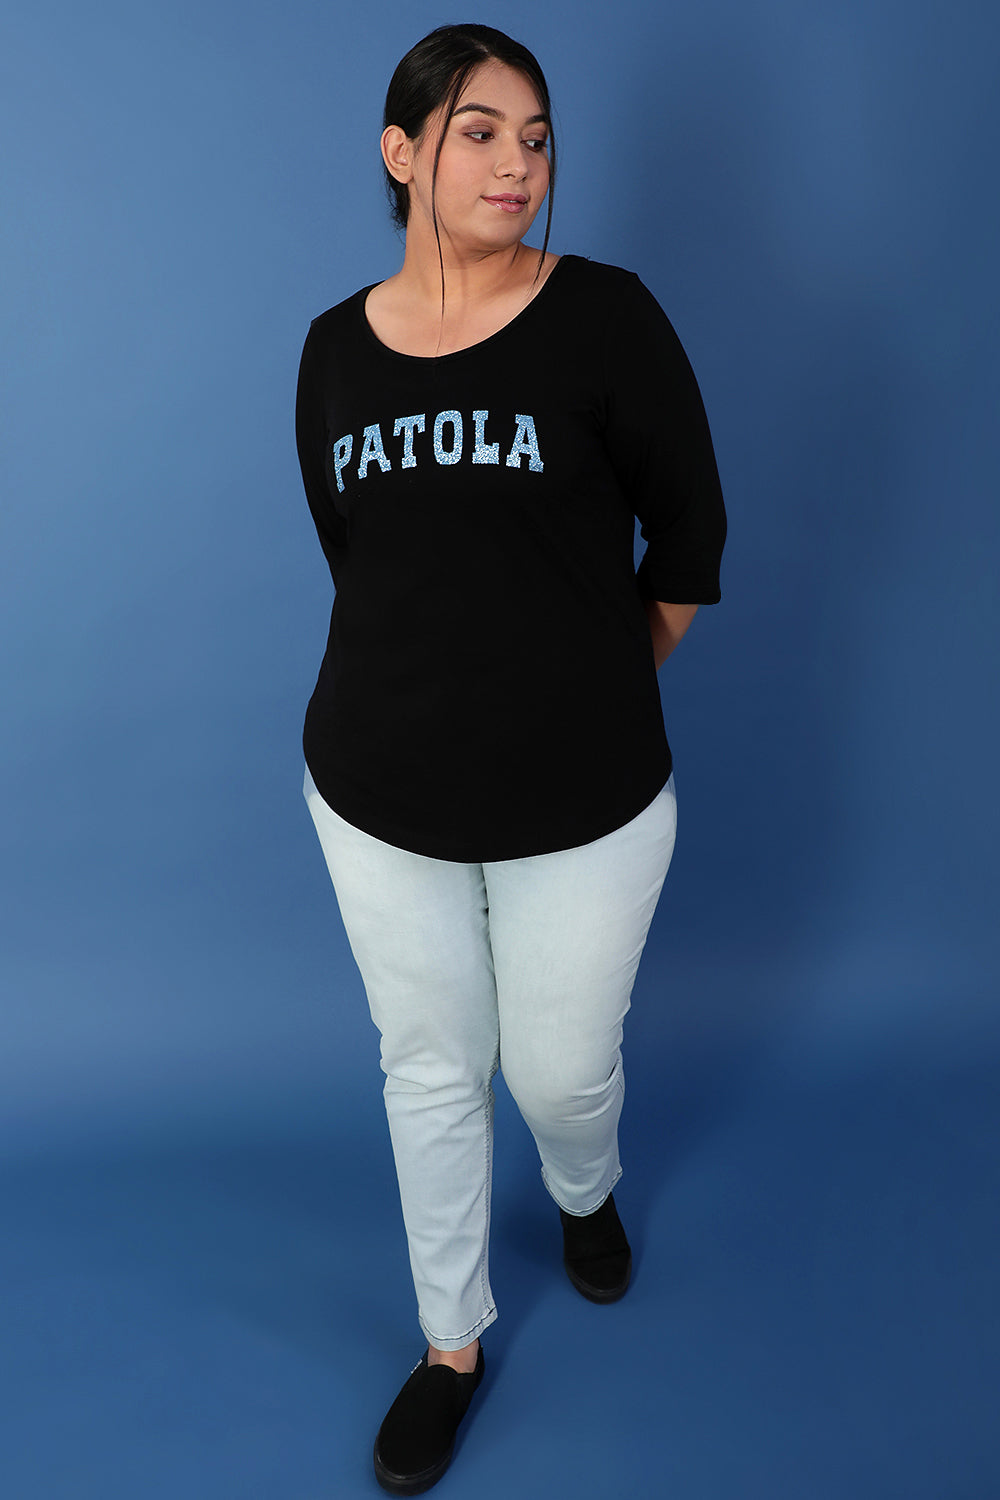 Buy Patola Black Tshirt